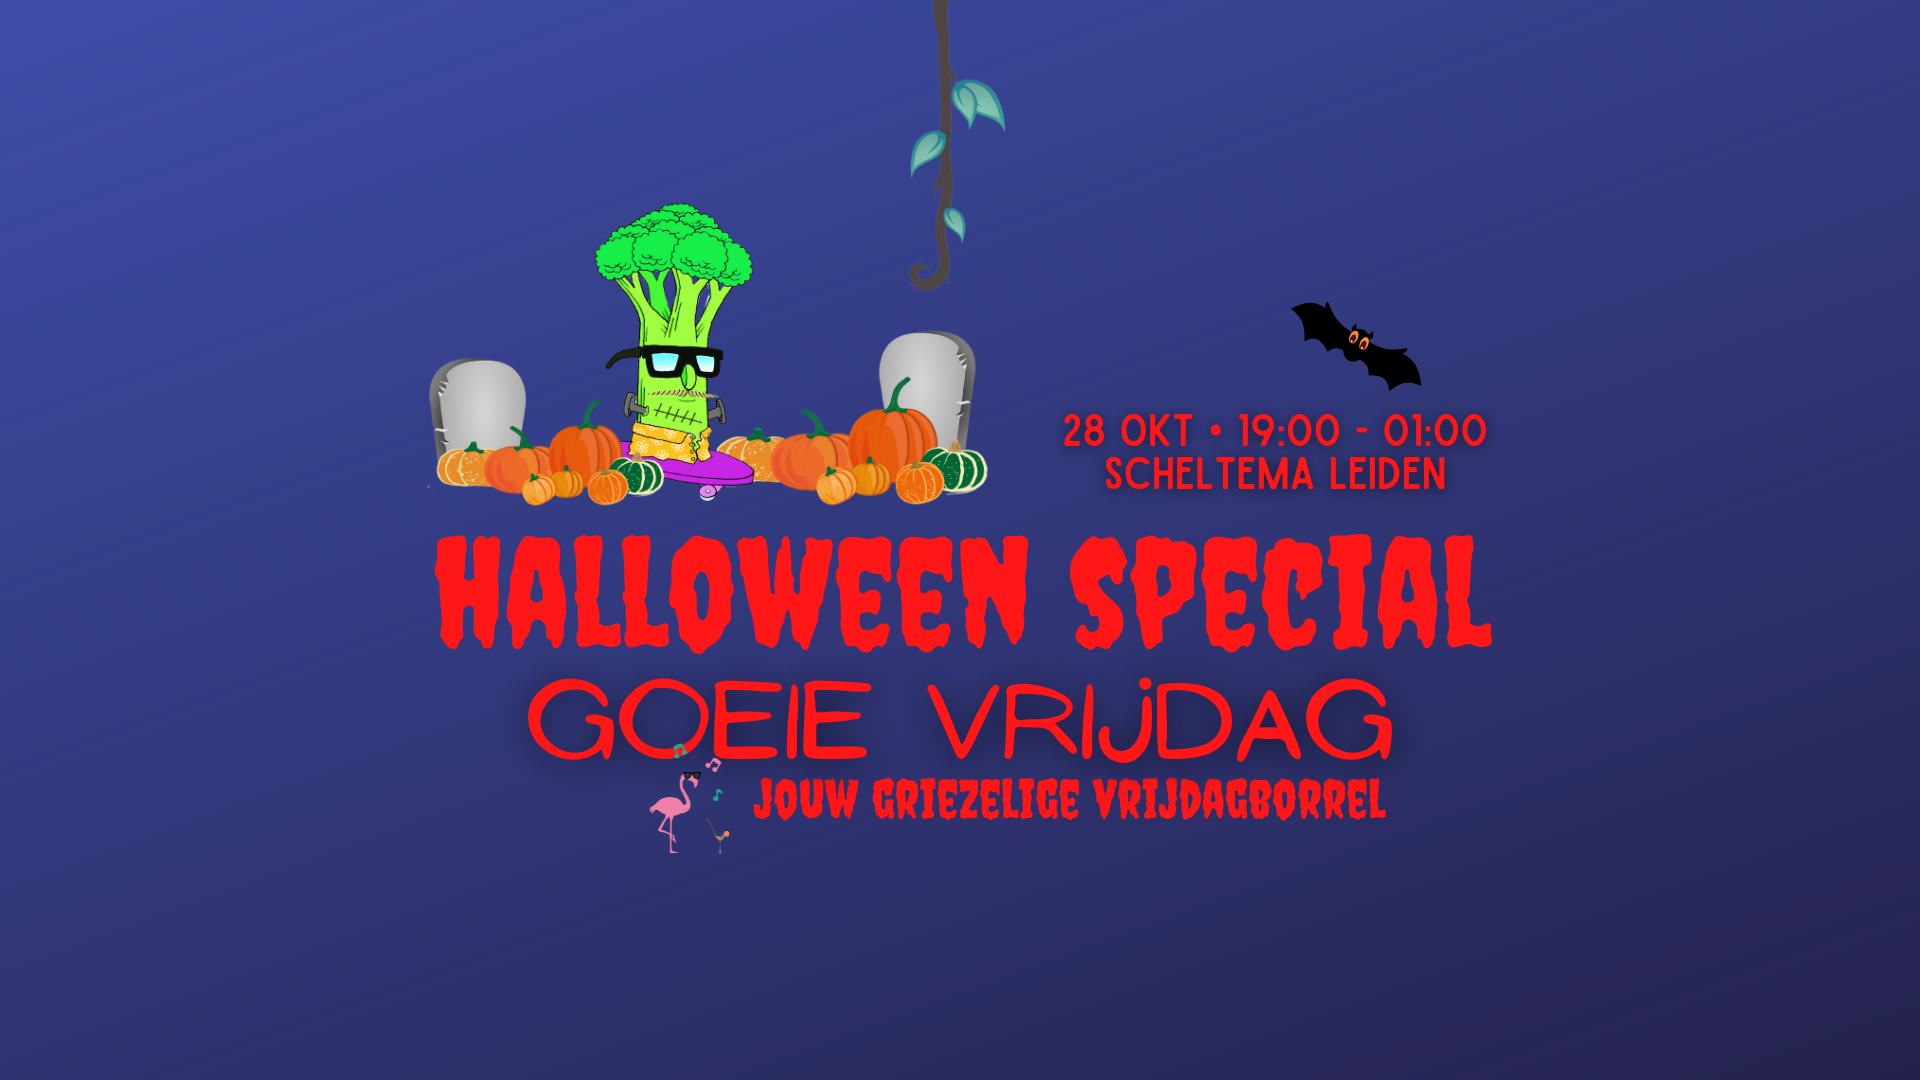 Goeie Vrijdag Halloween Special op vrijdag 28 oktober 2022 in Scheltema Leiden